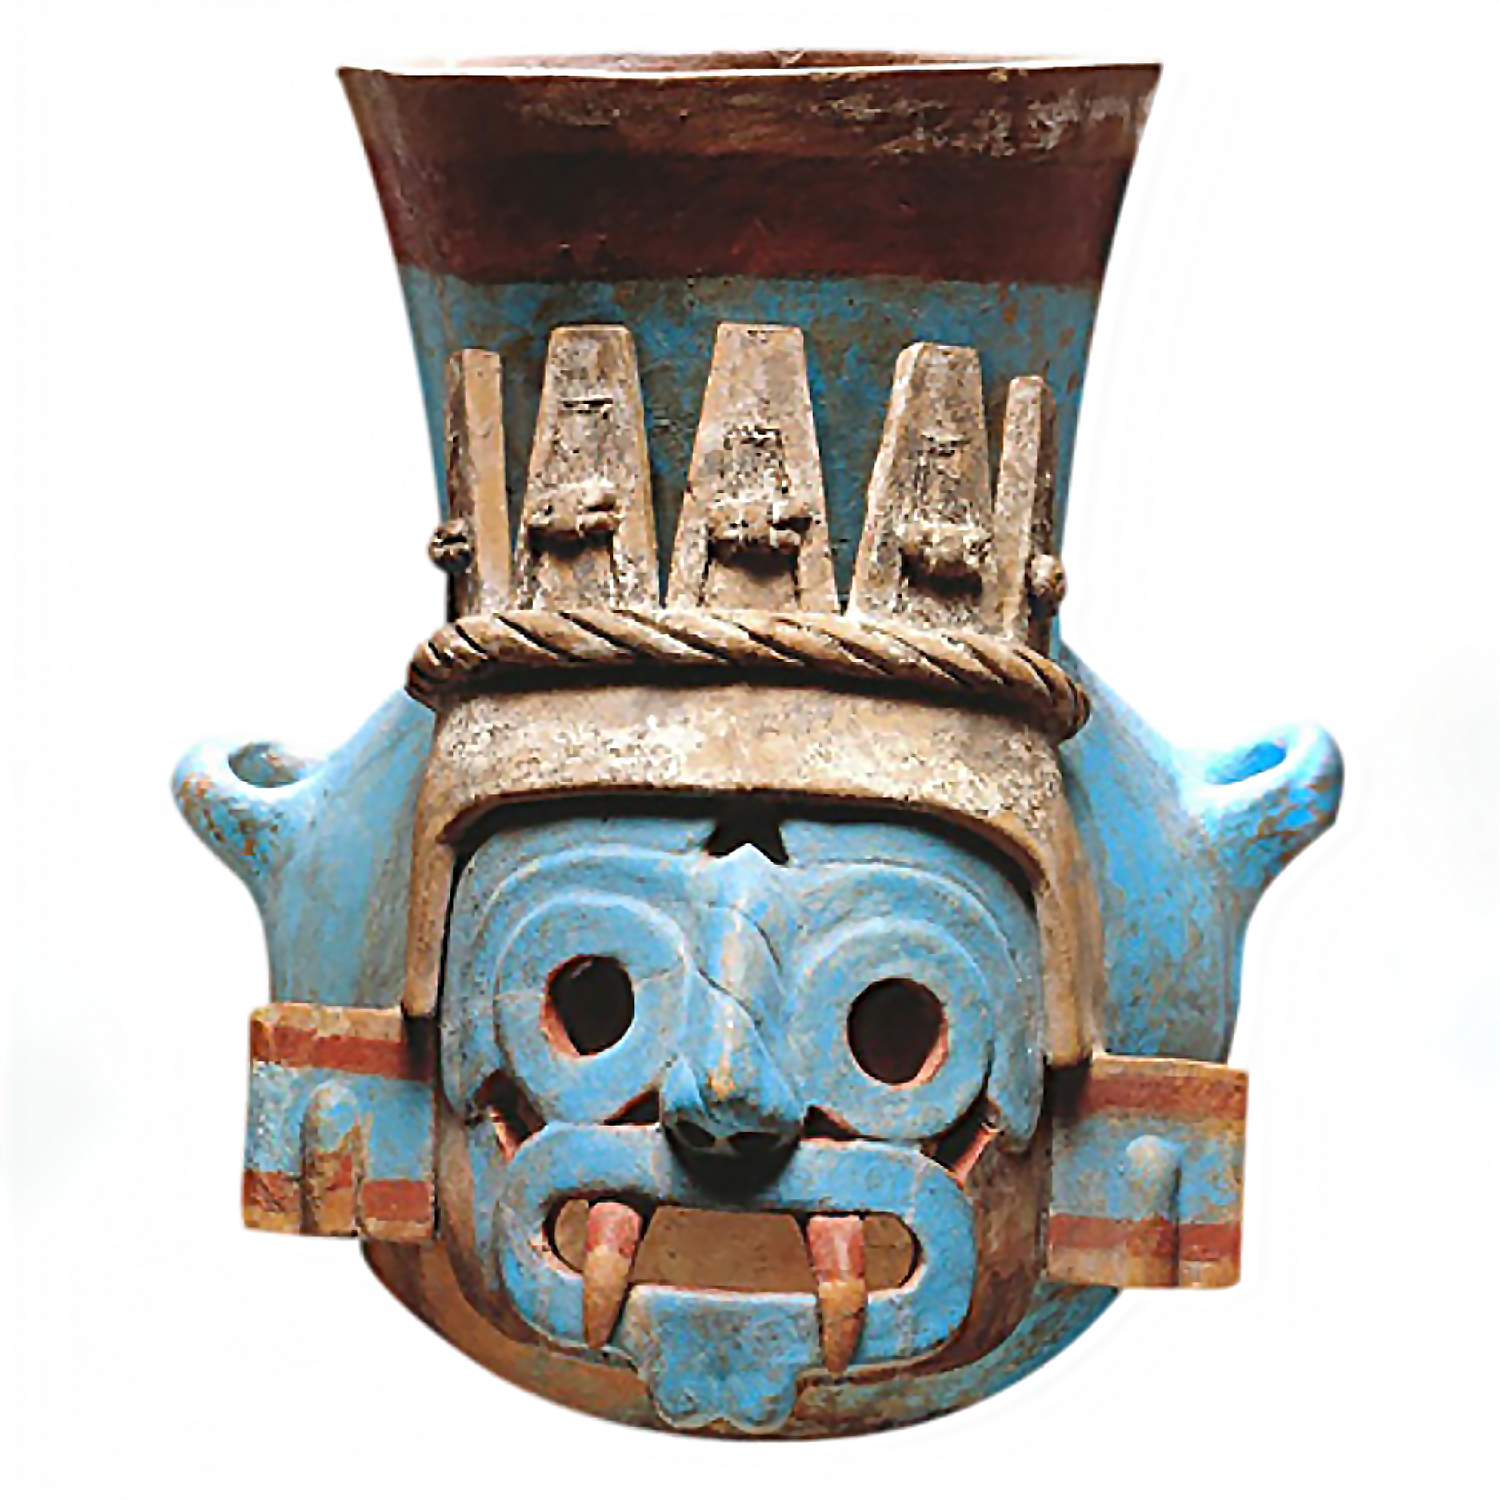 Сосуд в виде головы Тлалока. Ацтеки. Коллекция Museo del Templo Mayor, Мехико.